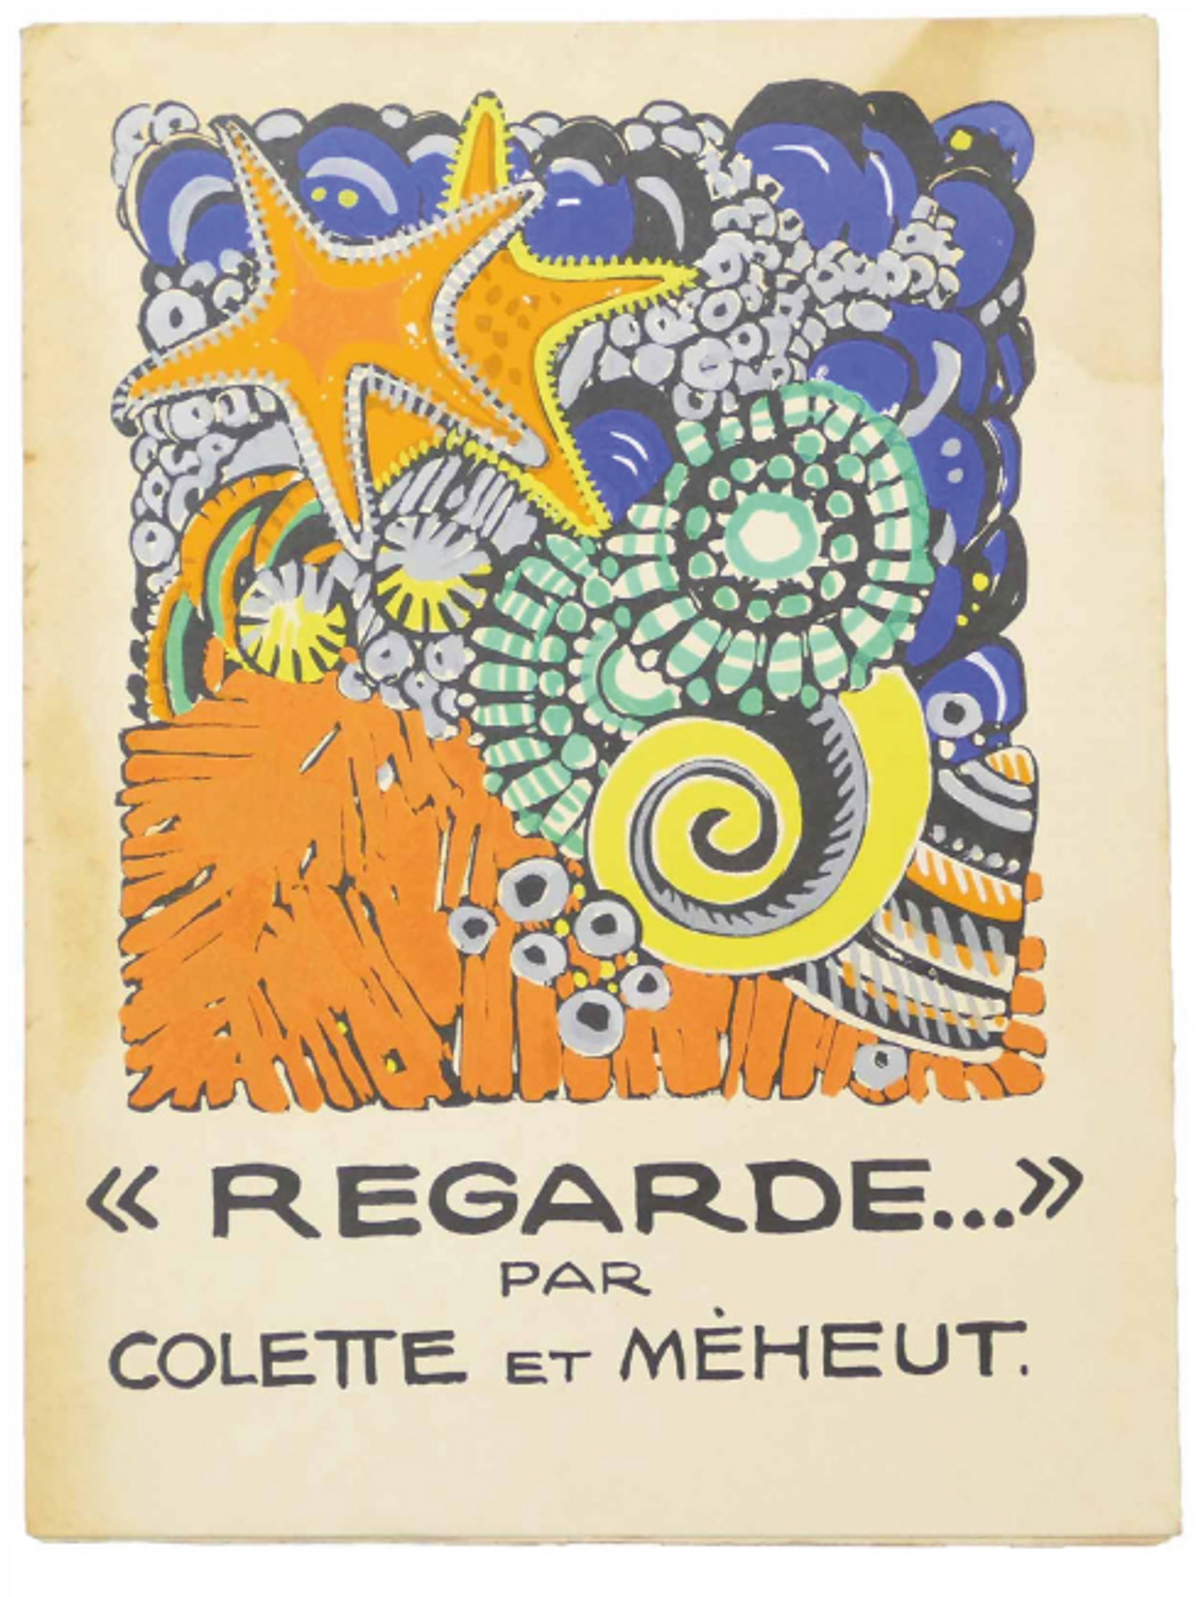 Mathurin Méheut et Colette Sidonie-Gabrielle, Regarde, Paris, J-G. Deschamps, novembre 1929, édition originale. © Librairie La Jument Verte